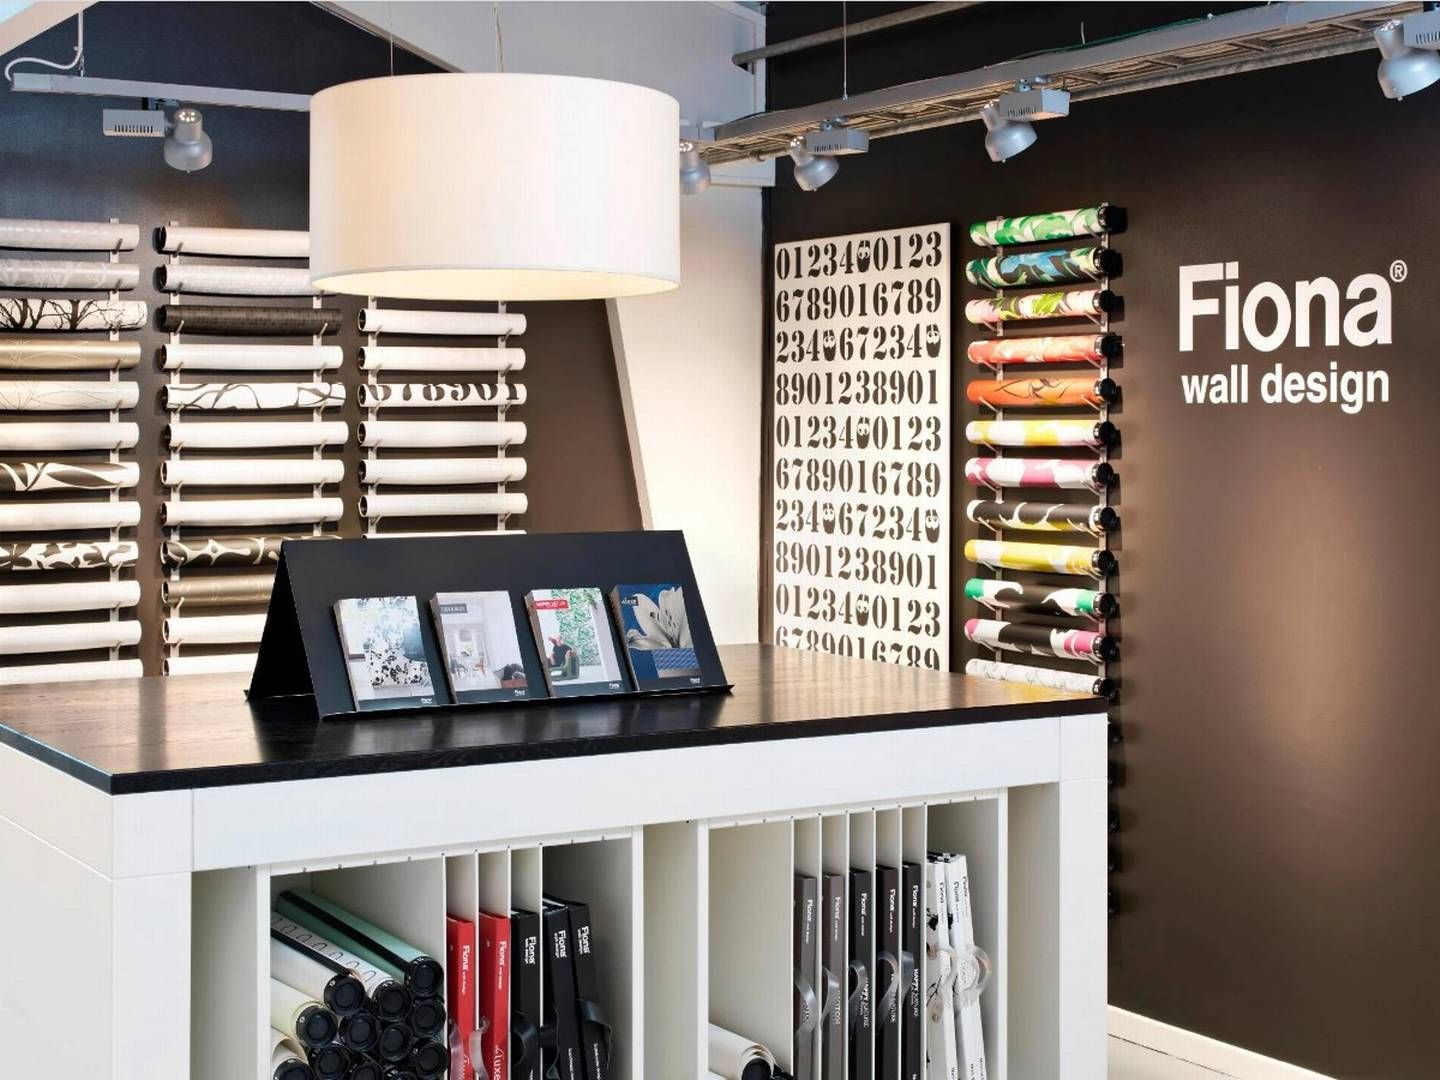 Fiona Walldesign sælger tapet og har været en del af Flügger-koncernen siden 1984. | Foto: Flügger/pr